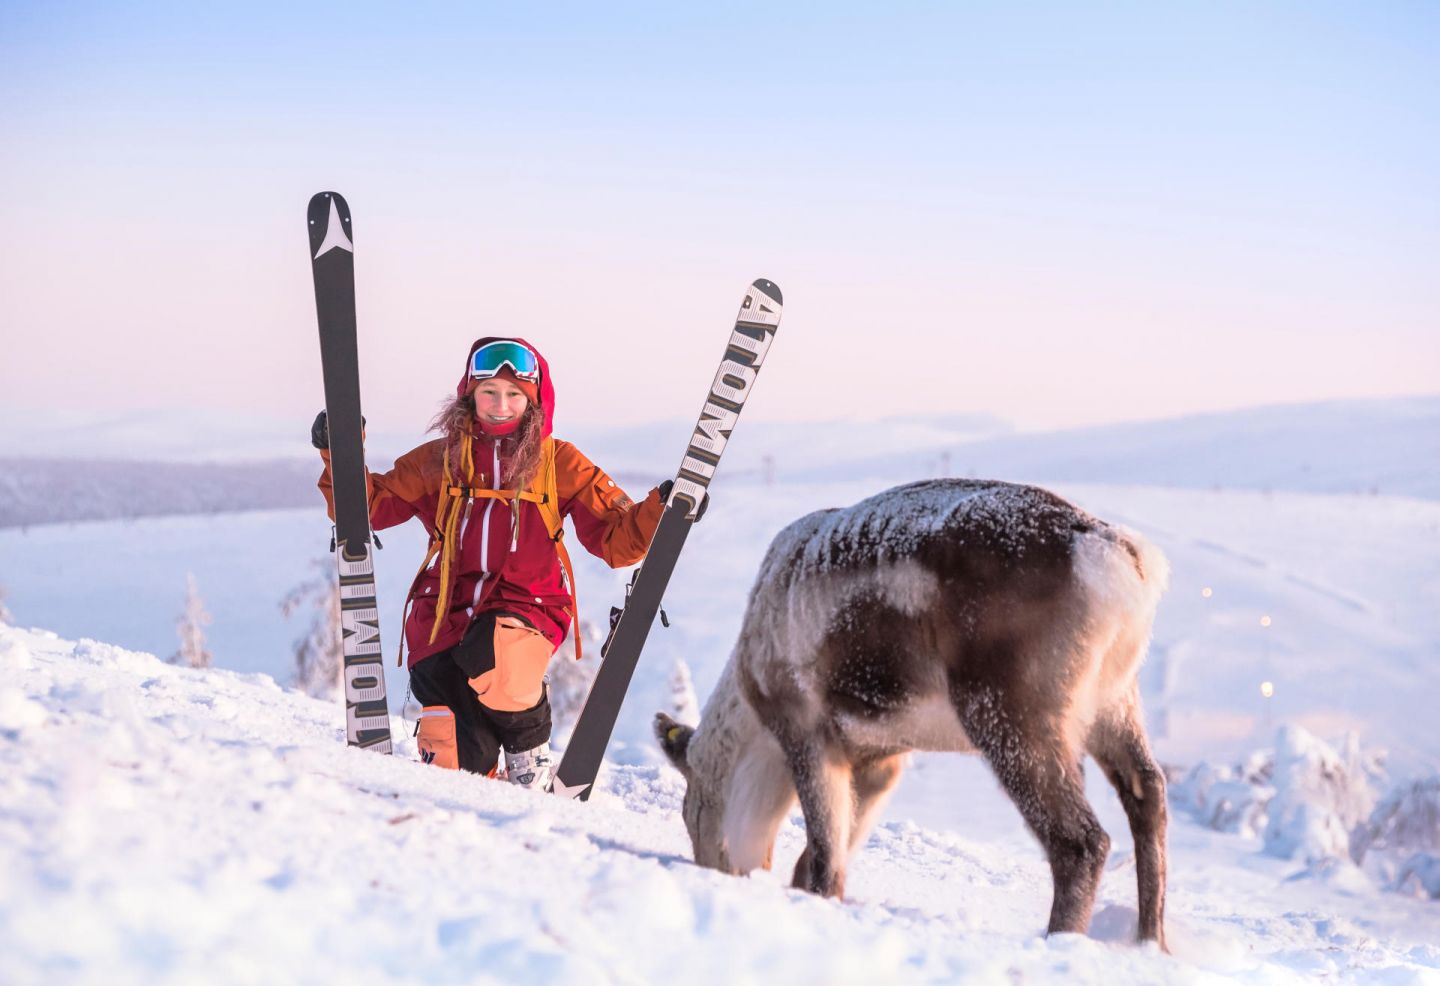 Skier surprised by reindeer friend on Lapland fell